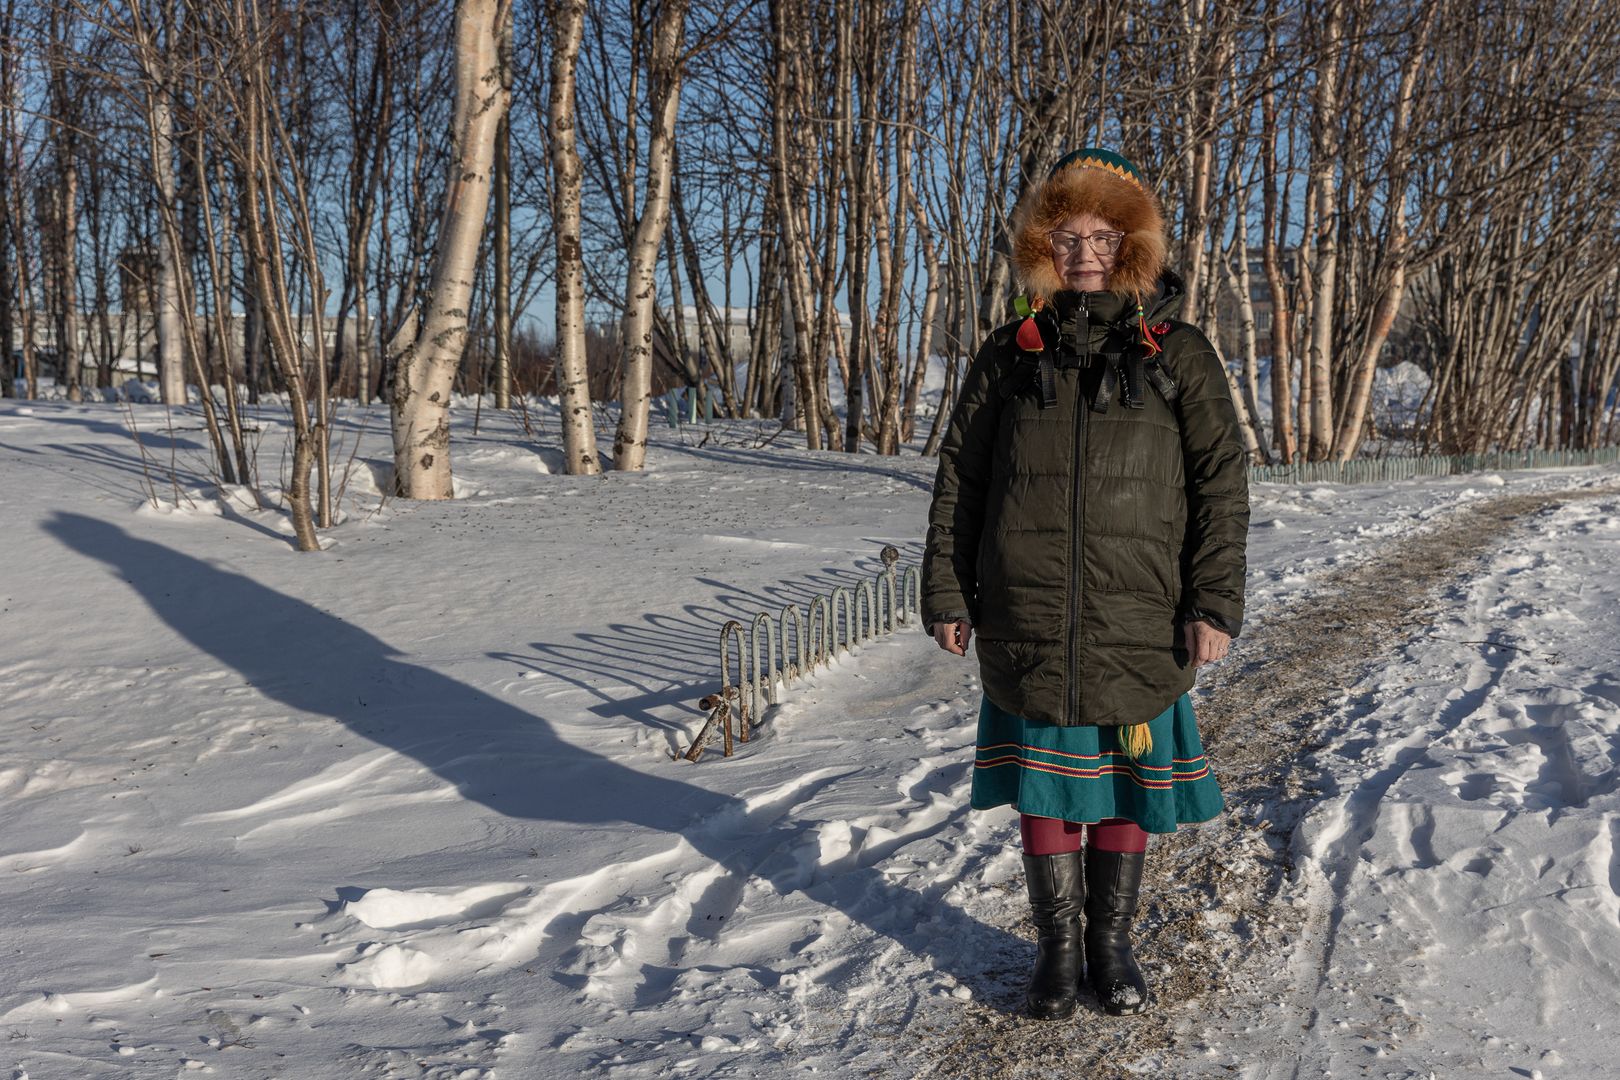 Валентина Совкина, представитель народа саамов, активно выступающая за сохранение культуры и образа жизни своего народа.